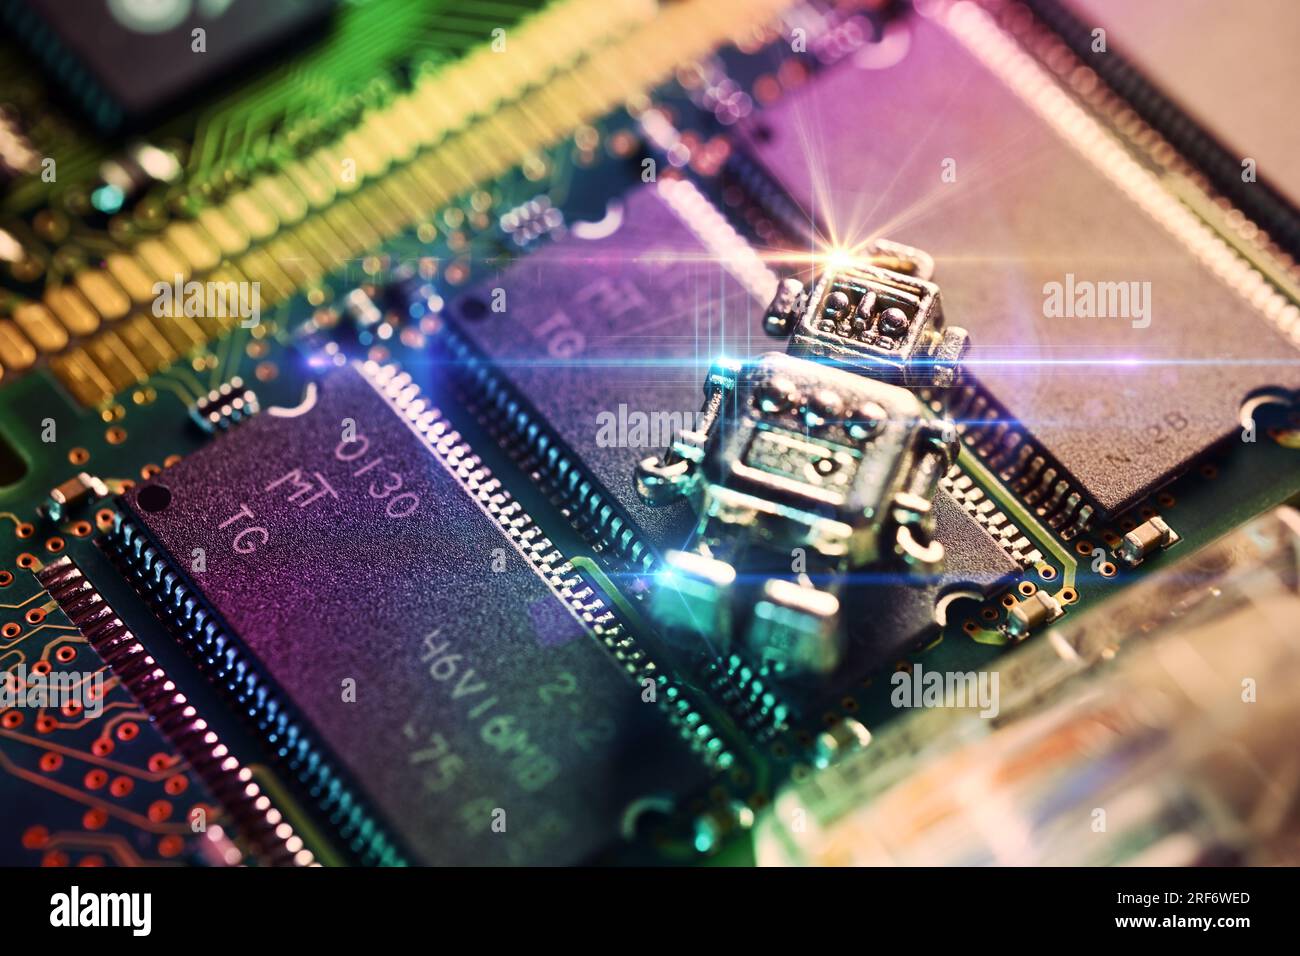 FOTOMONTAGE, Miniatur-Roboter auf einer Computerplatine, Symbolfoto Künstliche Intelligenz Stock Photo